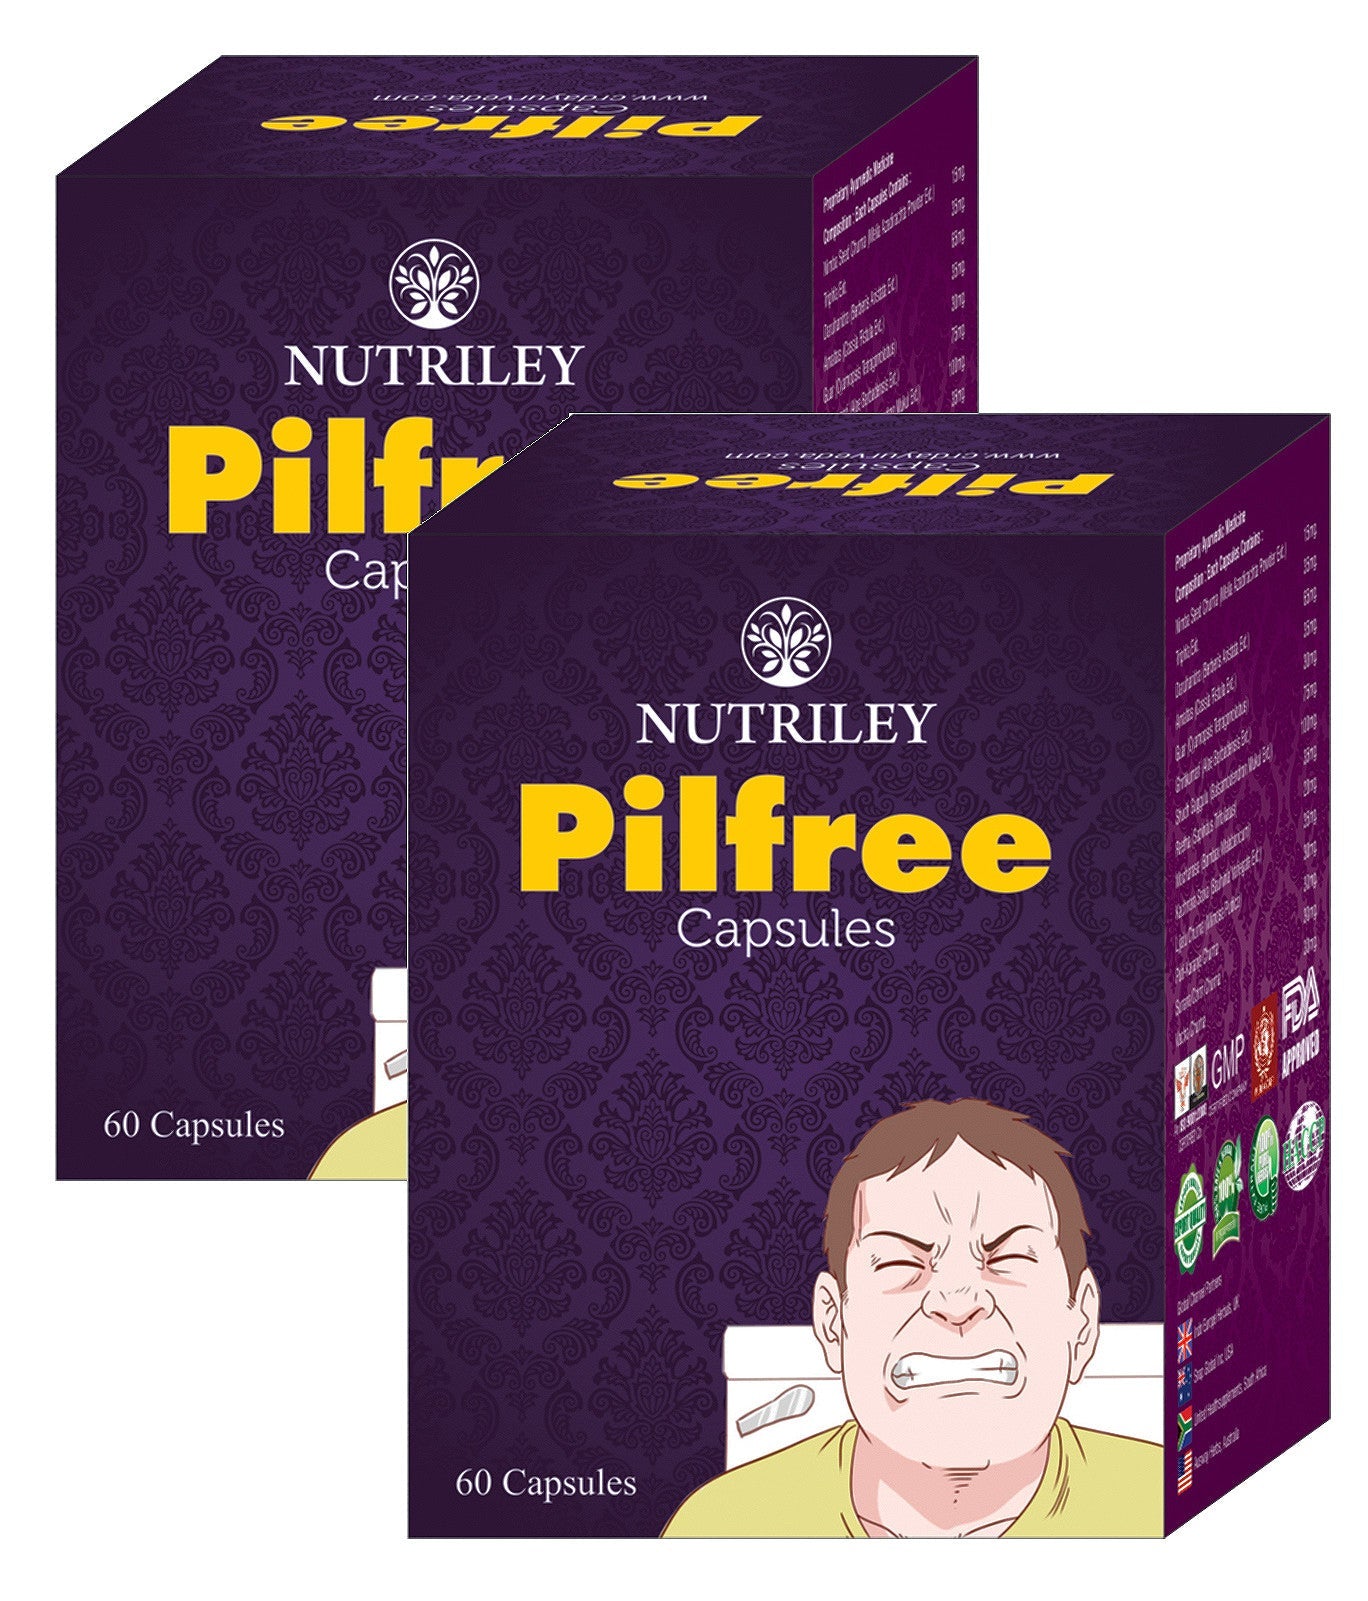 CRD Ayurveda Pilfree - Piles Care Capsules (60 Capsules) - Pack of 2